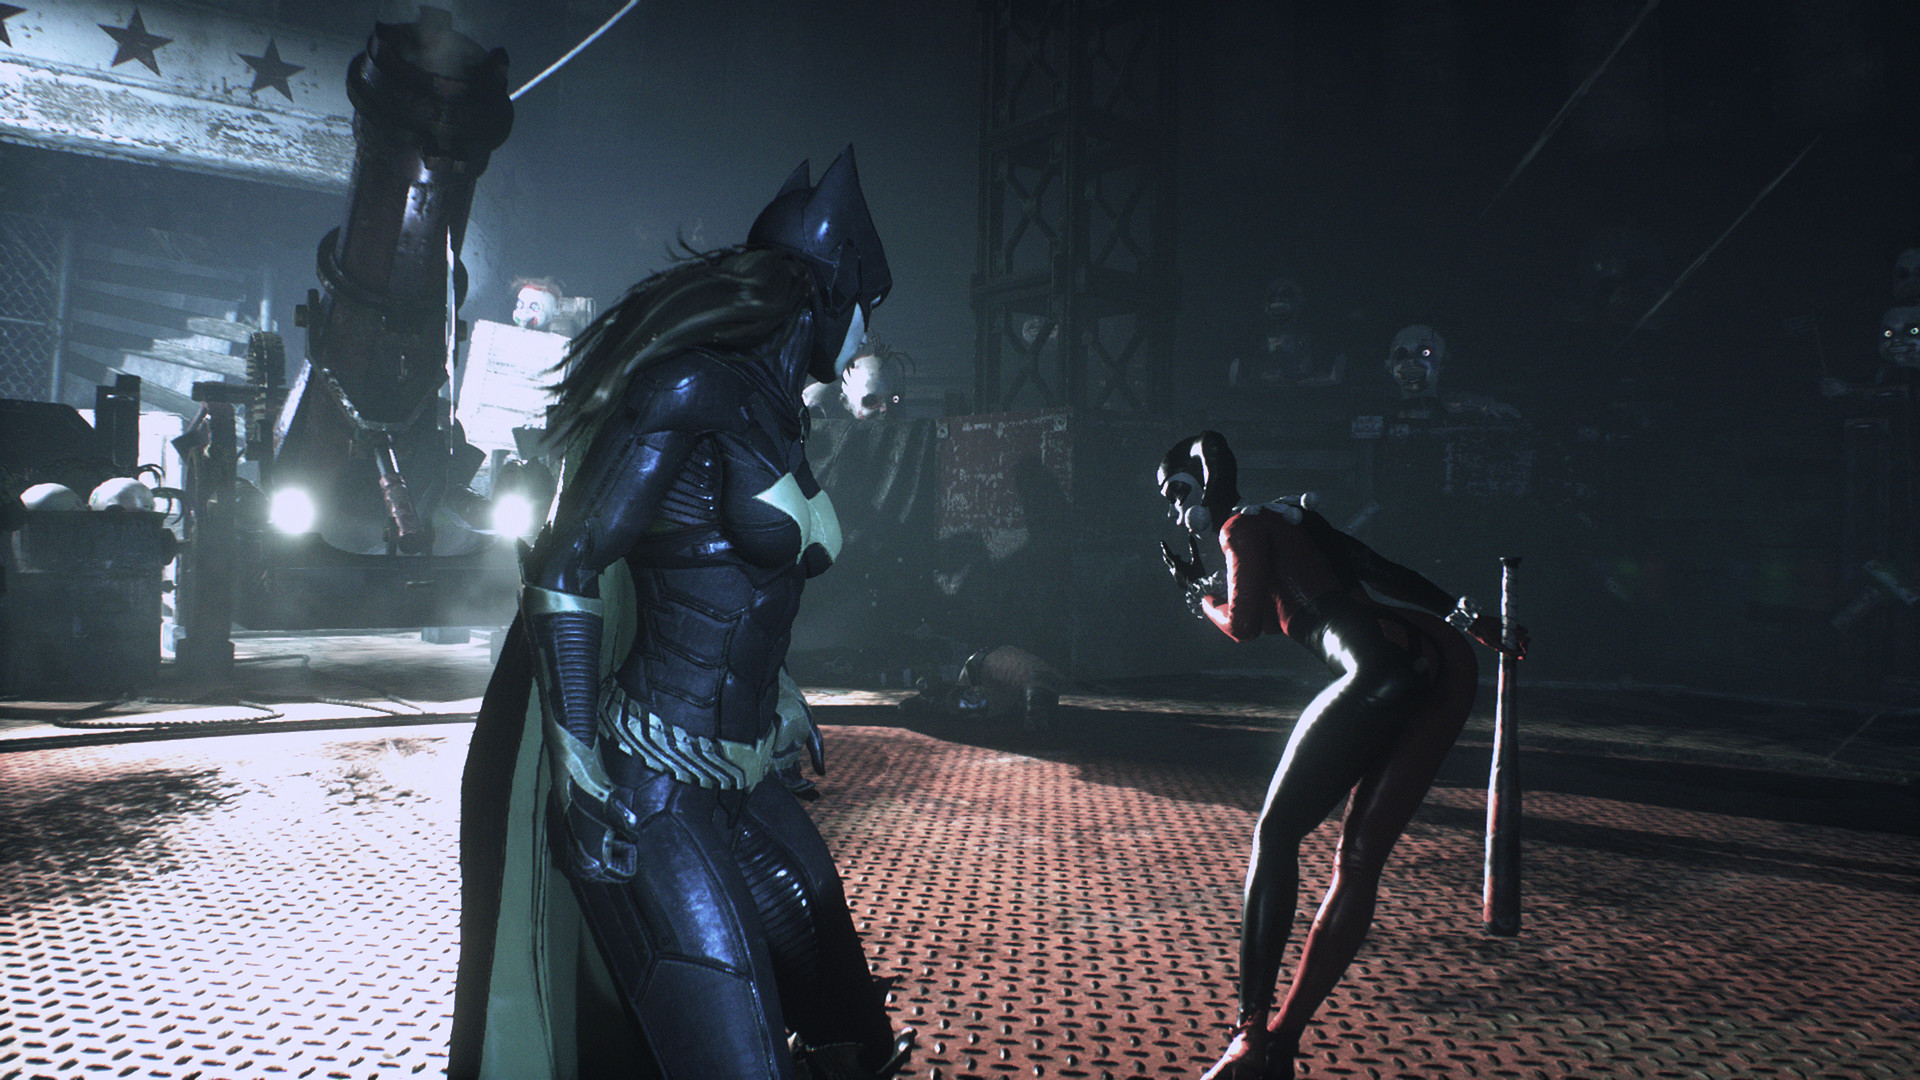 Batman ps4 gameplay 1080p torrent besoins calorique journaliers pour une femme torrent